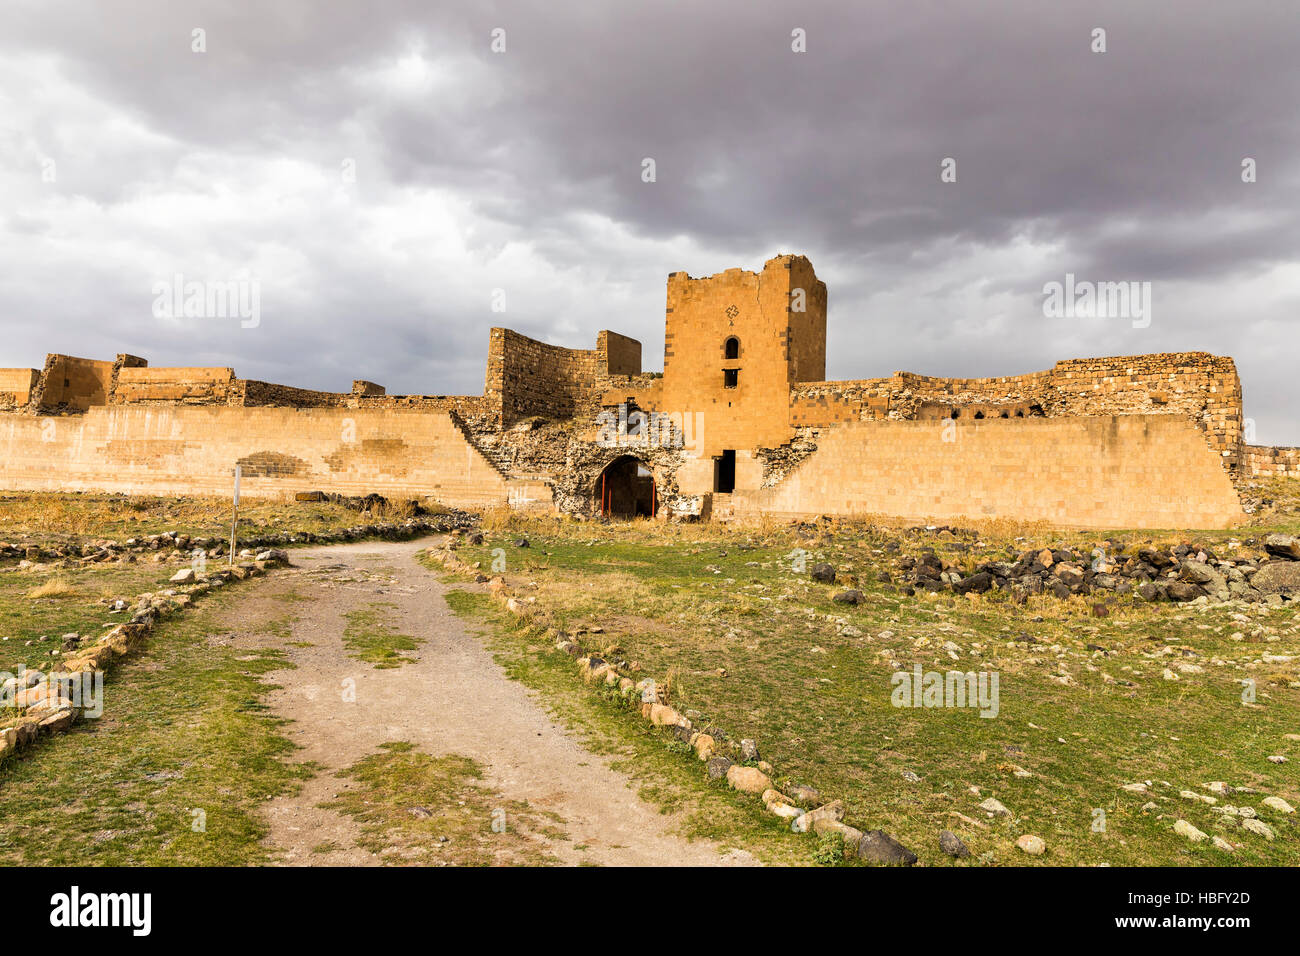 La muralla del castillo, ruinas de Ani. Ani es una ciudad medieval armenio en ruinas situada en la provincia turca de Kars Foto de stock